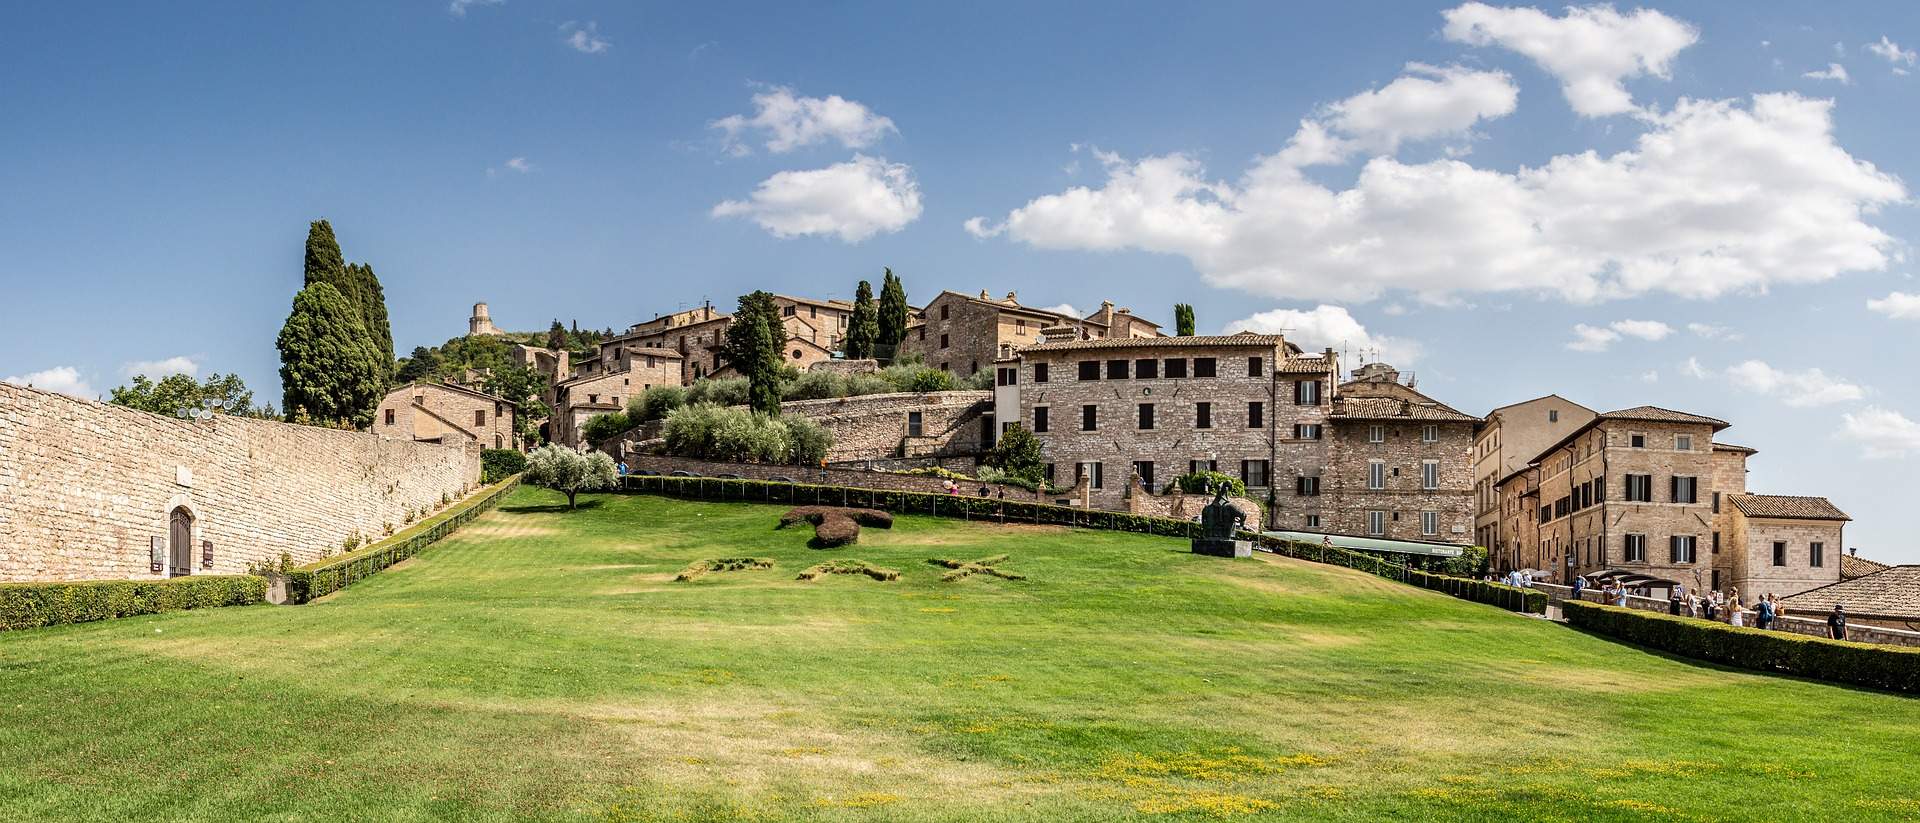 Busreis meerdaagse reis Umbrië - Assisi ©Achim Ruhnau from Pixabay